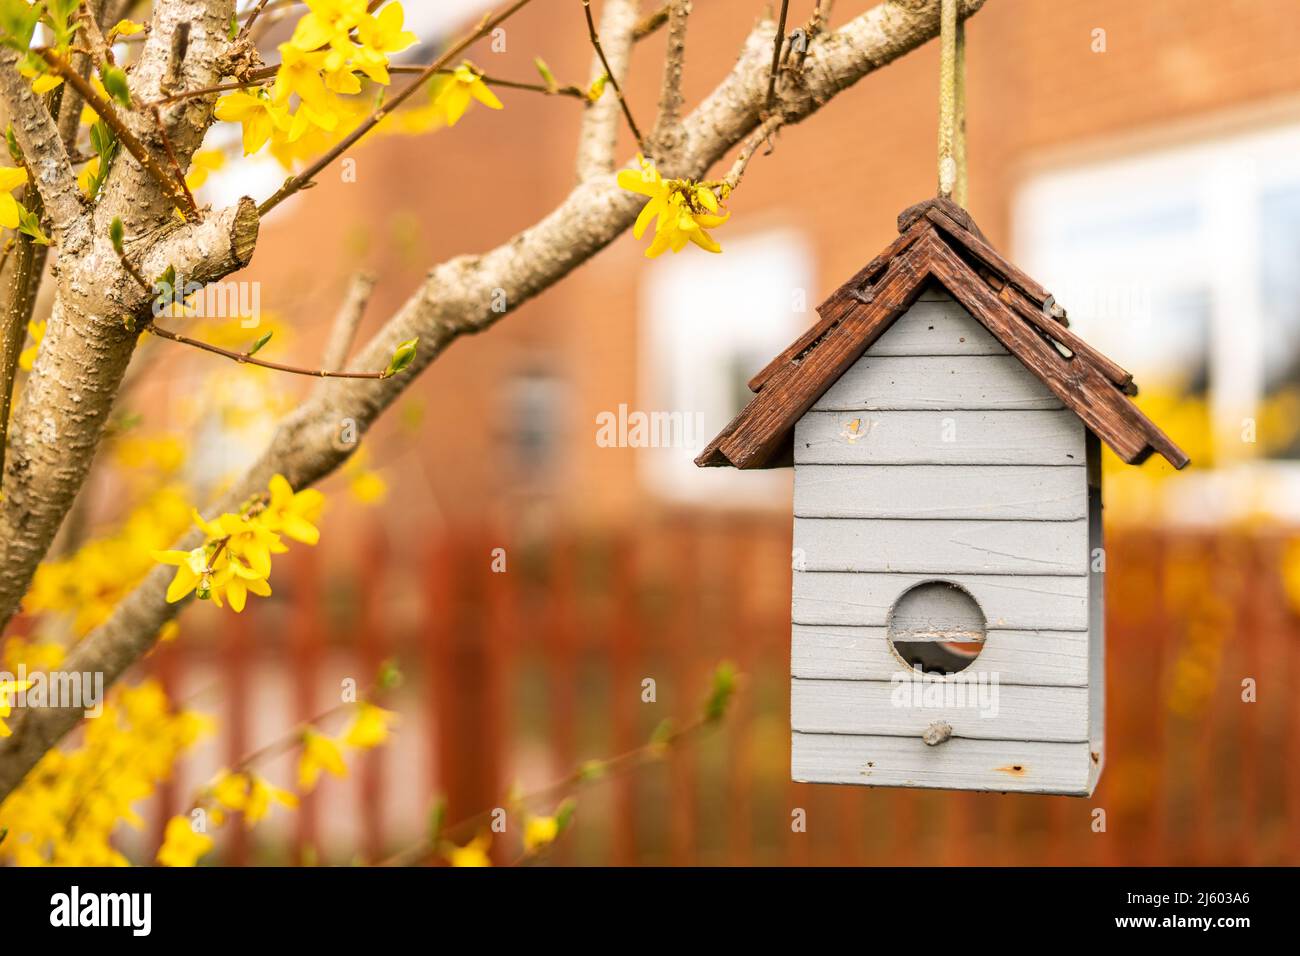 Mangeoire à oiseaux accrochée à un arbuste décoratif avec des fleurs jaunes, boîte à oiseaux en forme d'une petite maison vue de l'avant. Birdhouse fait de bois dedans Banque D'Images